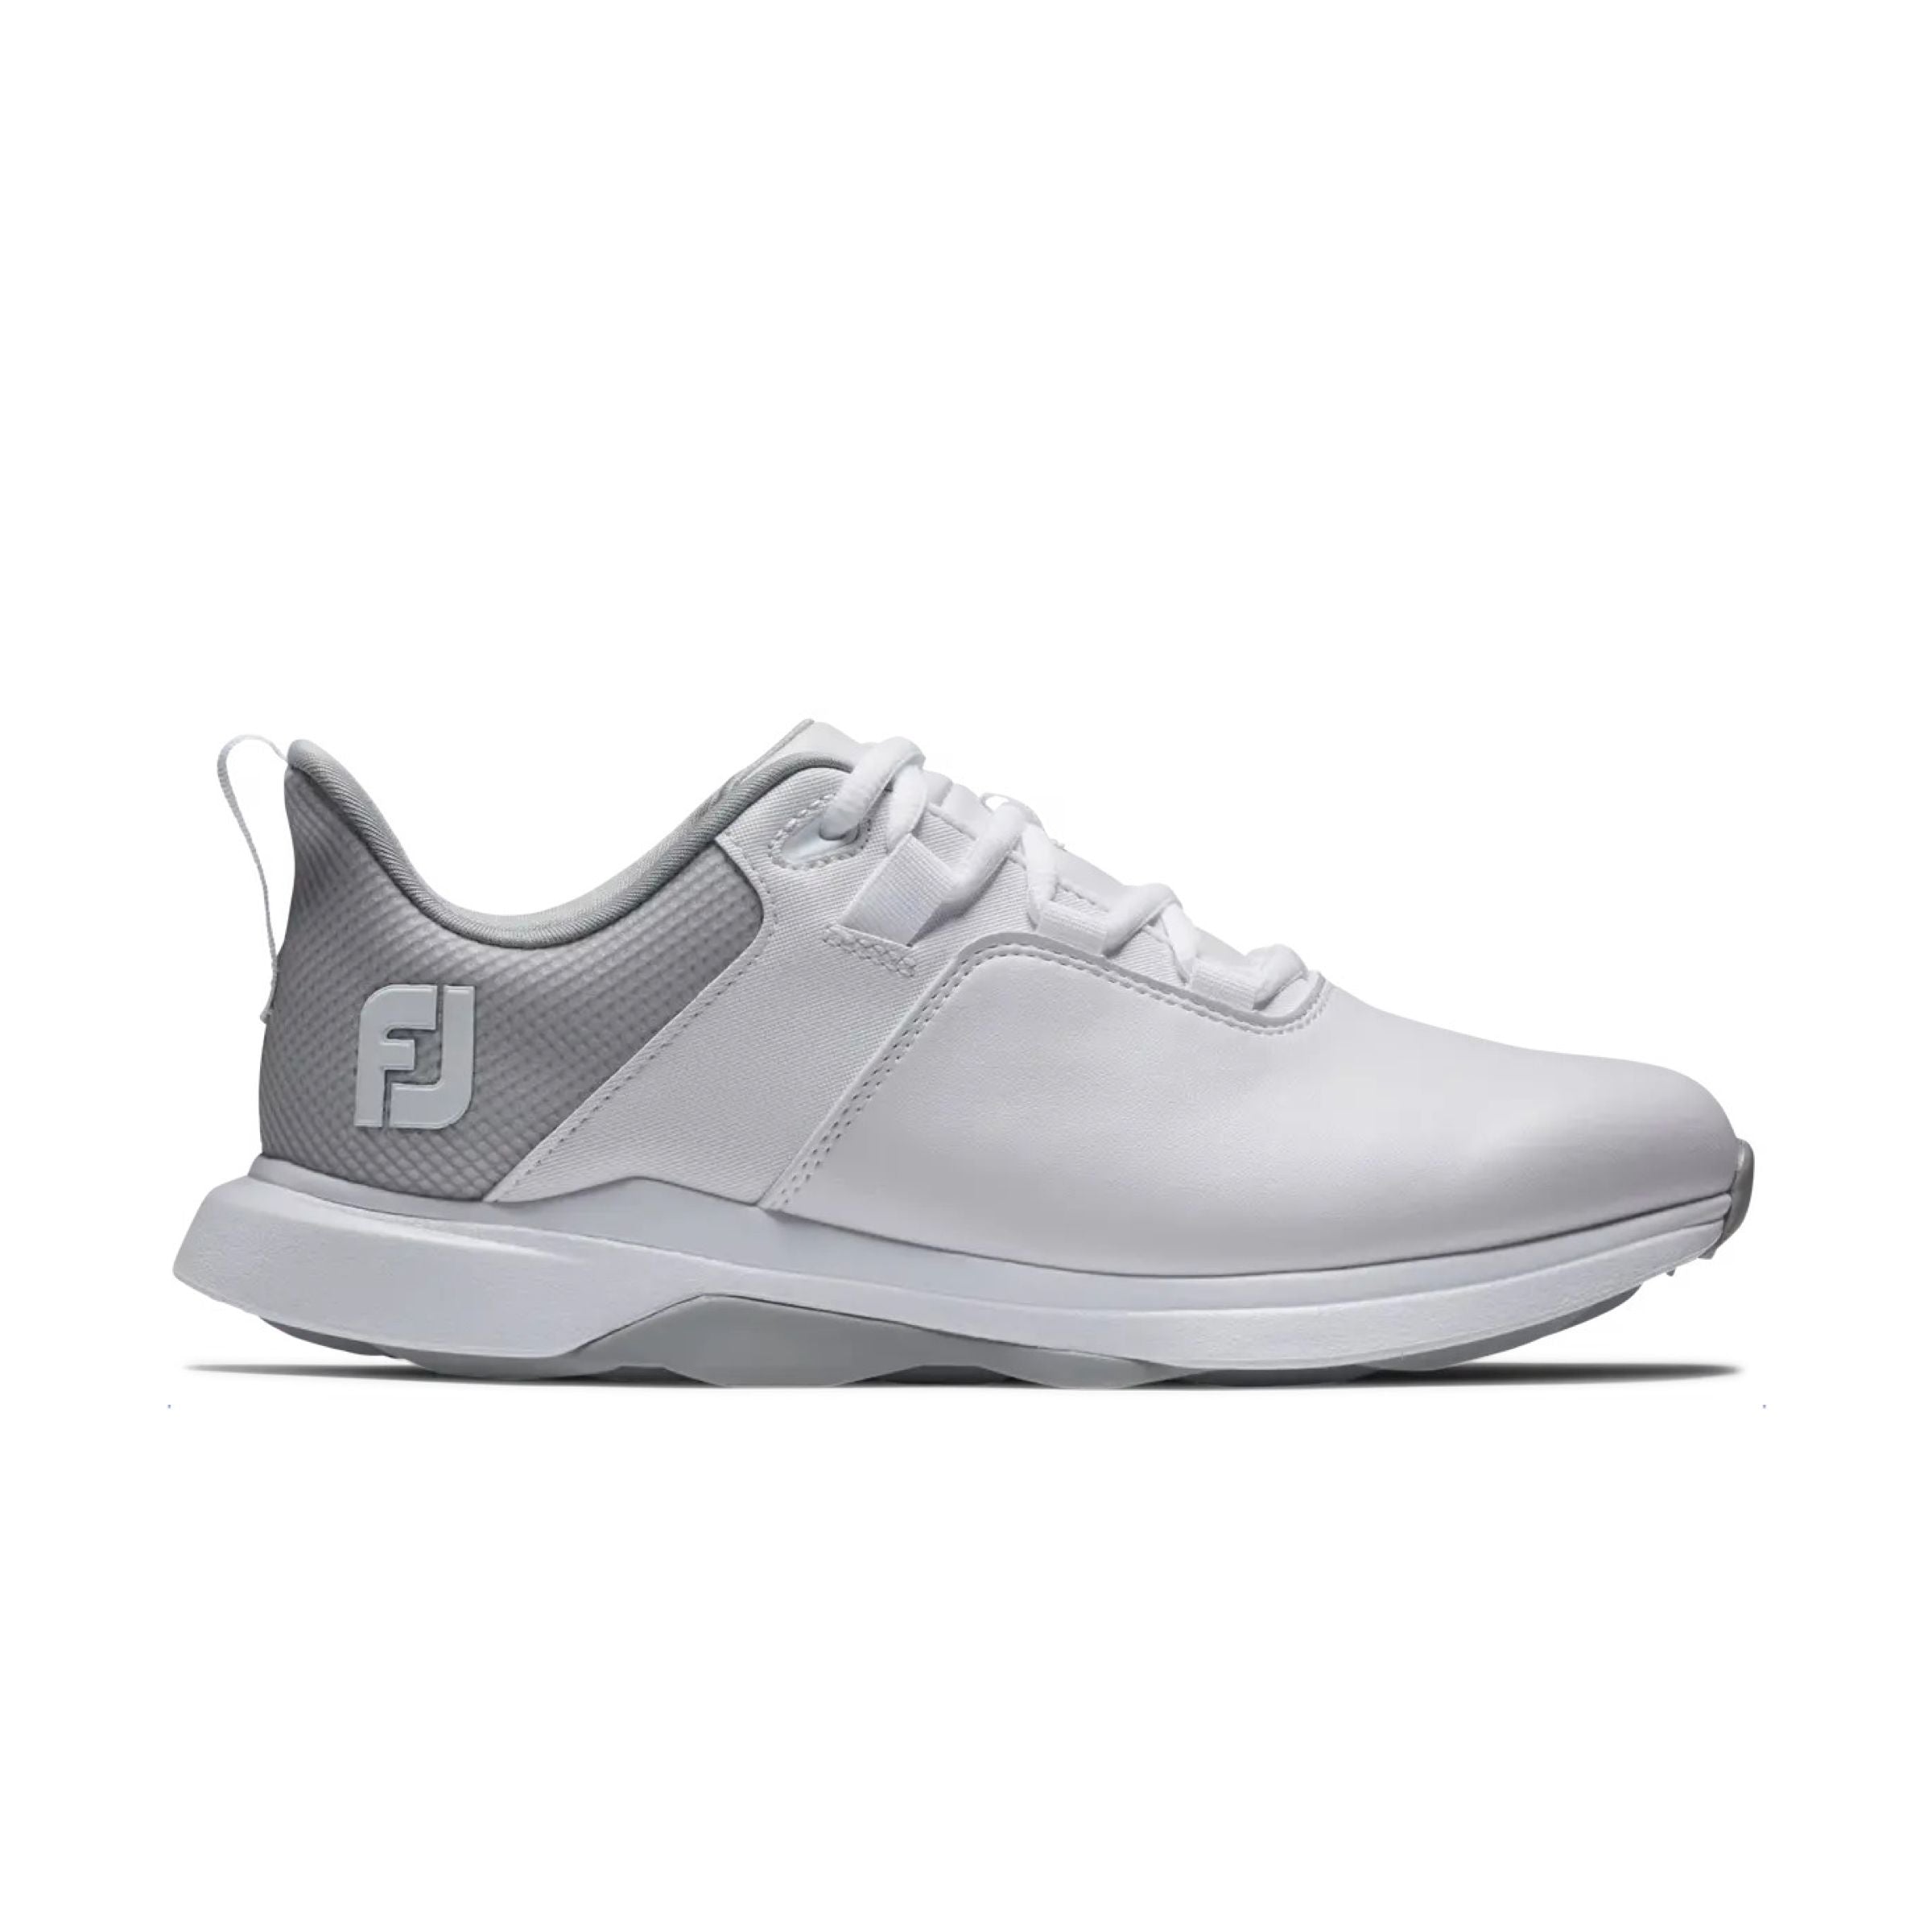 Women's ProLite Golf Shoes White/Grey 